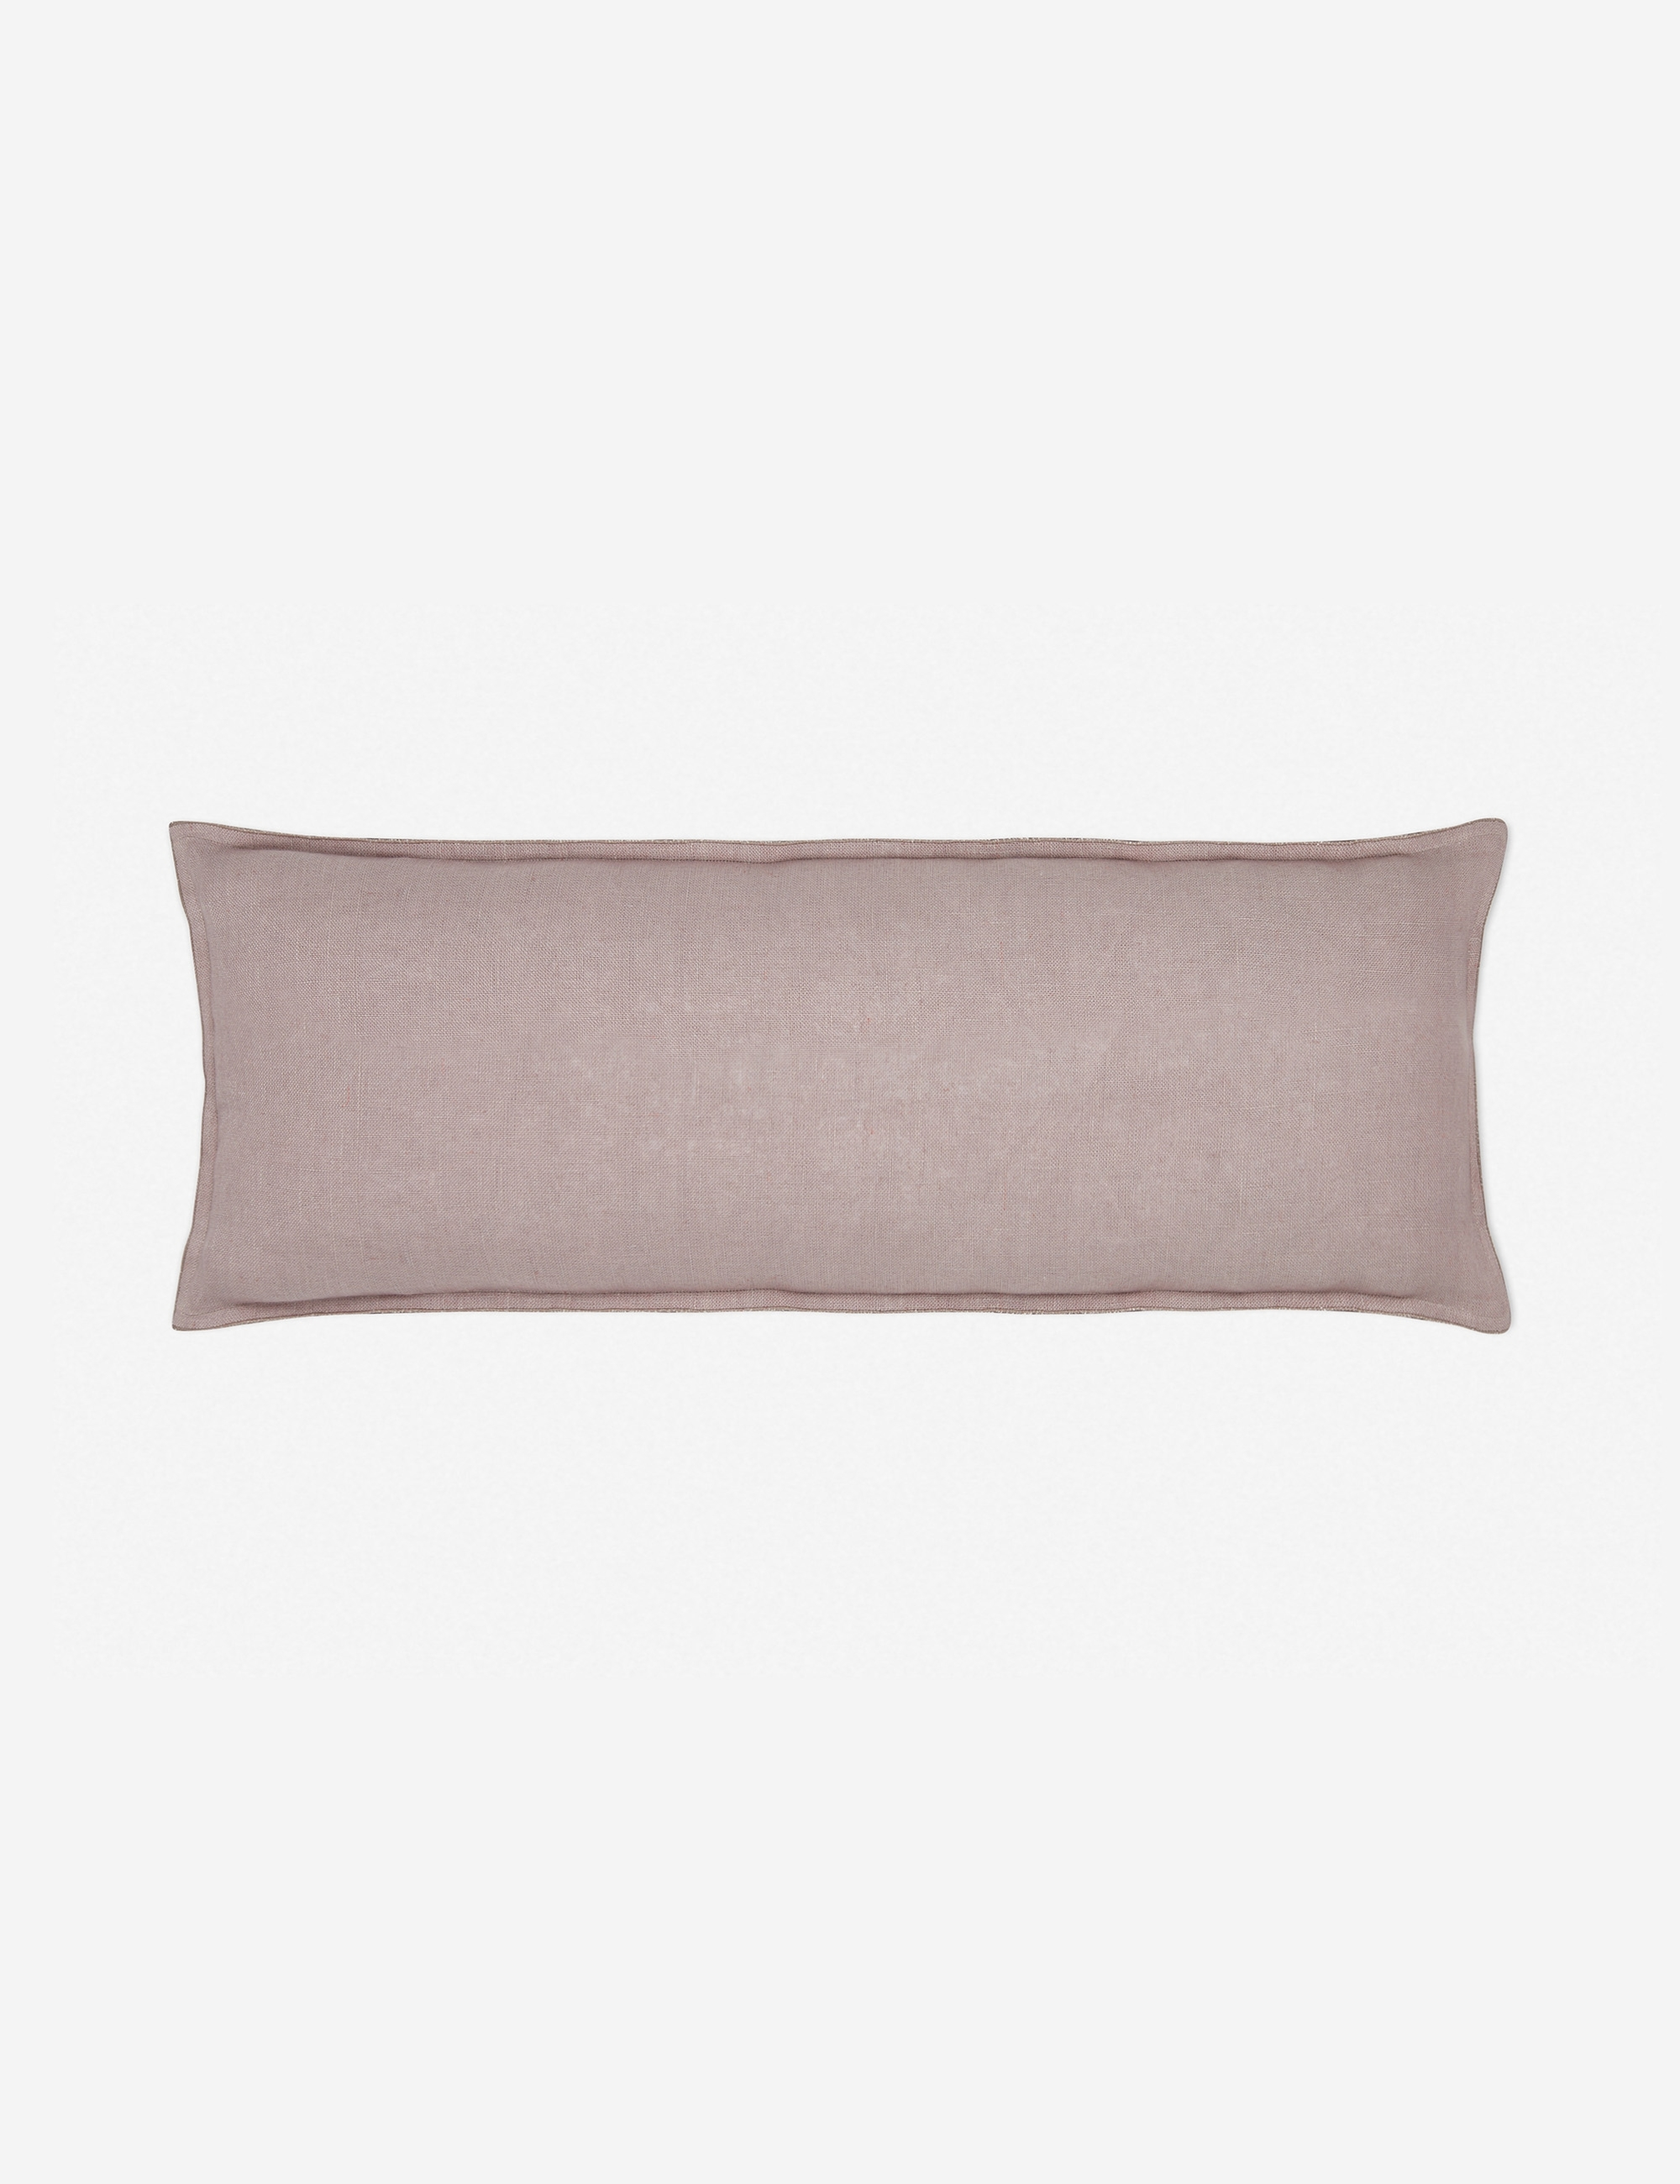 Arlo Linen Long Lumbar Pillow, Dark Natural - Lulu and Georgia